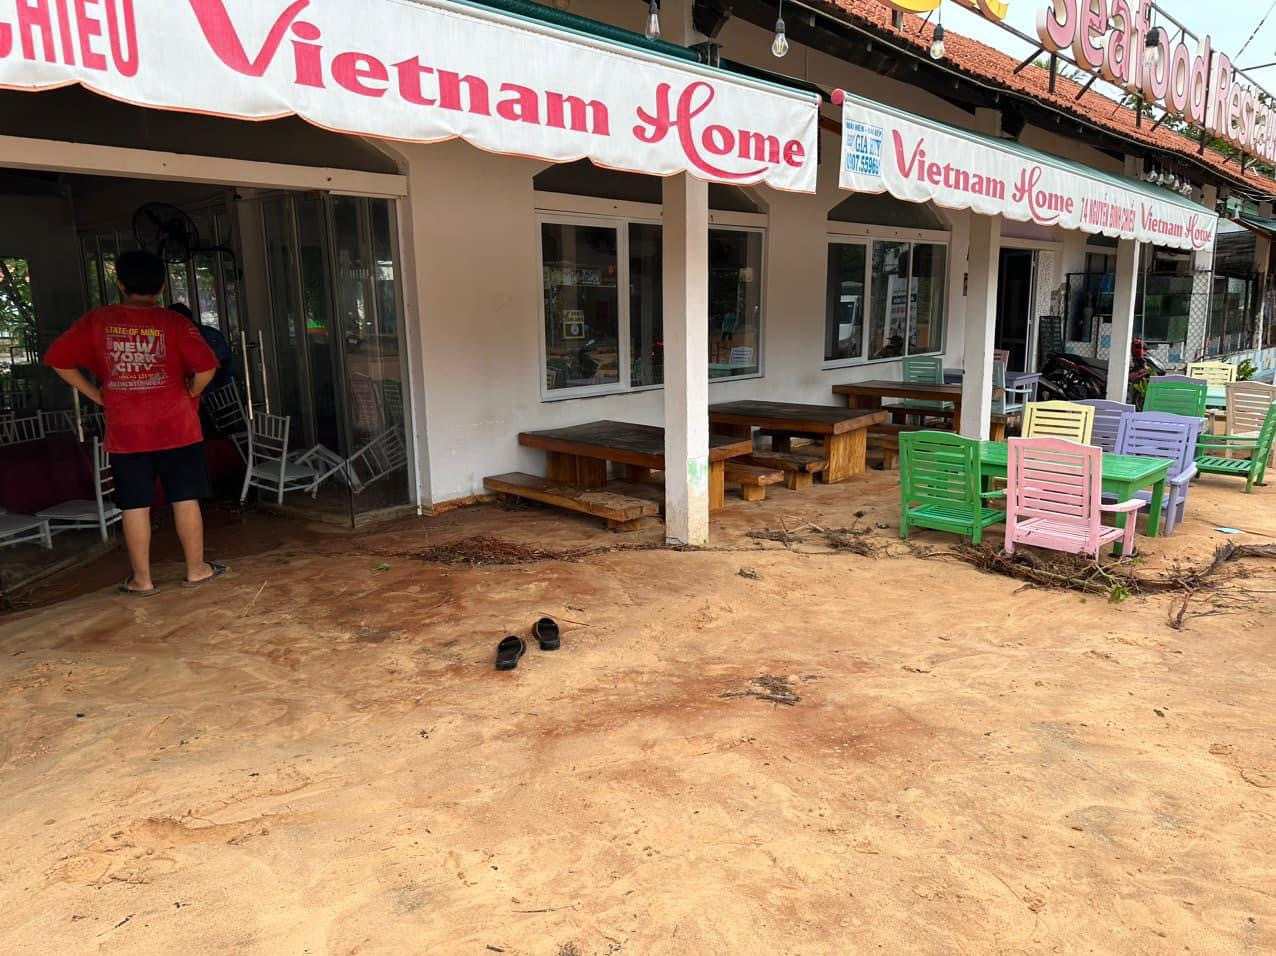 Cát tràn vào sảnh và sân nhà hàng VietNam Home Mũi Né sáng 21.5. Ảnh: Duy Tuấn